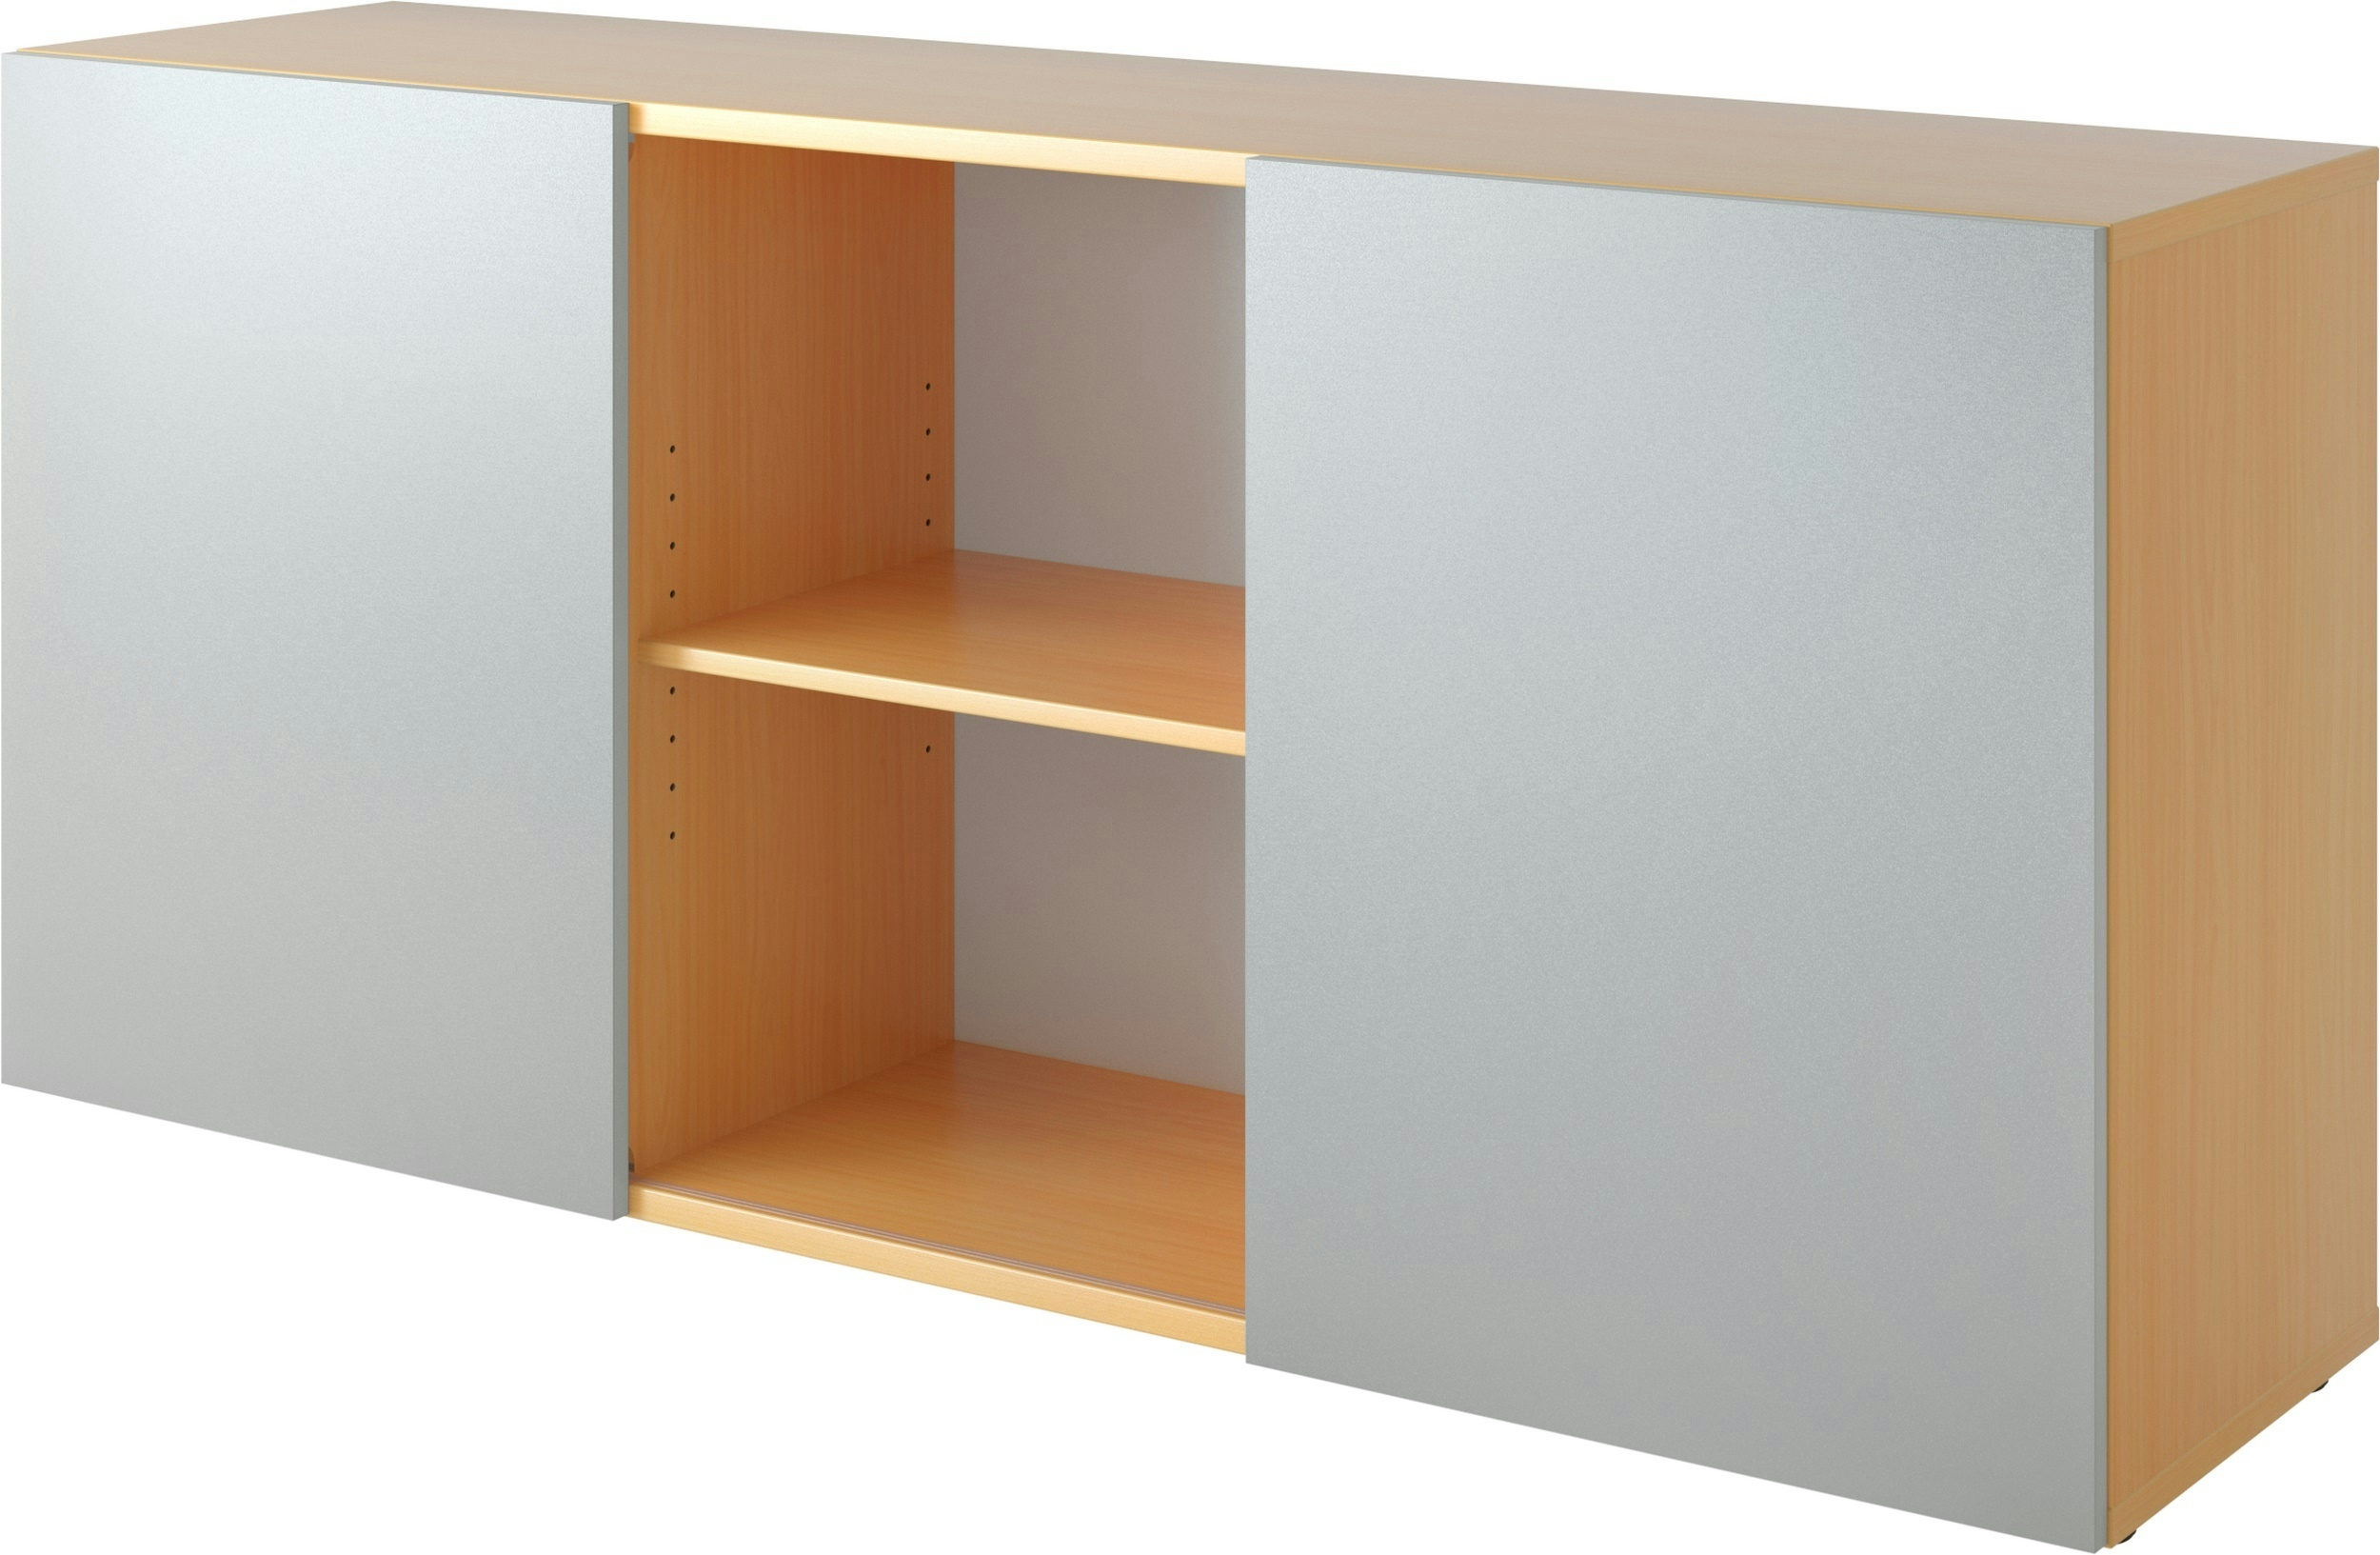 bümö Schwebetürenschrank, Sideboard Buche/Silber - Büromöbel Sideboard Holz 160cm breit, 42cm schmal, Büro Schrank mit Schwebetür für Flur oder als